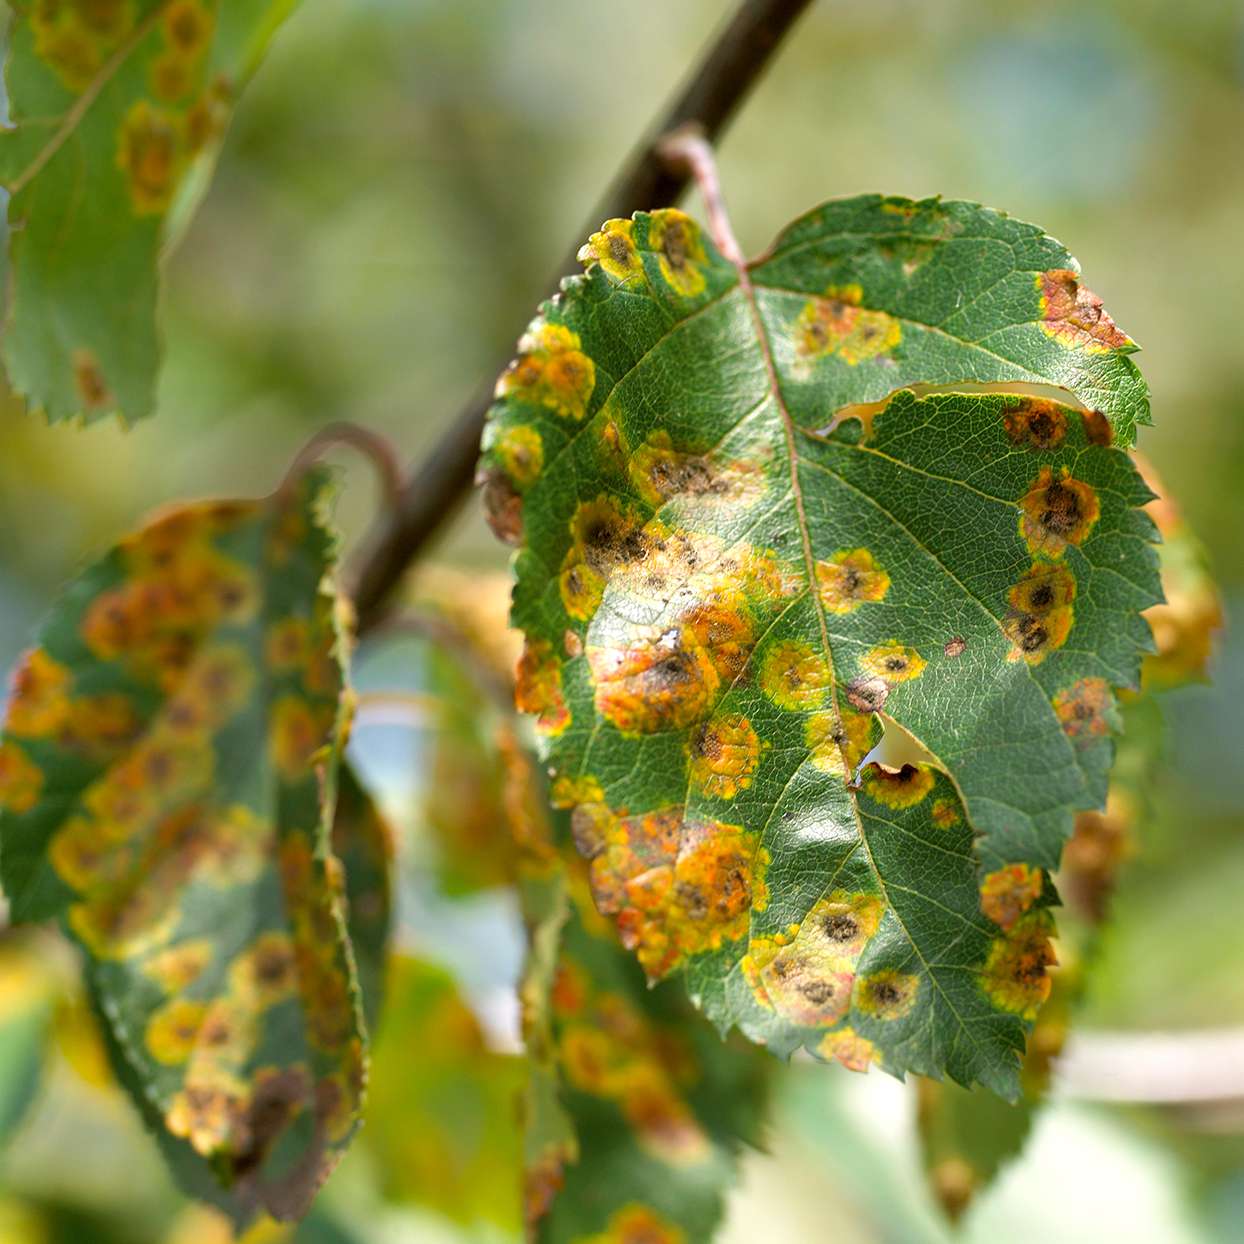 Leaf Rust